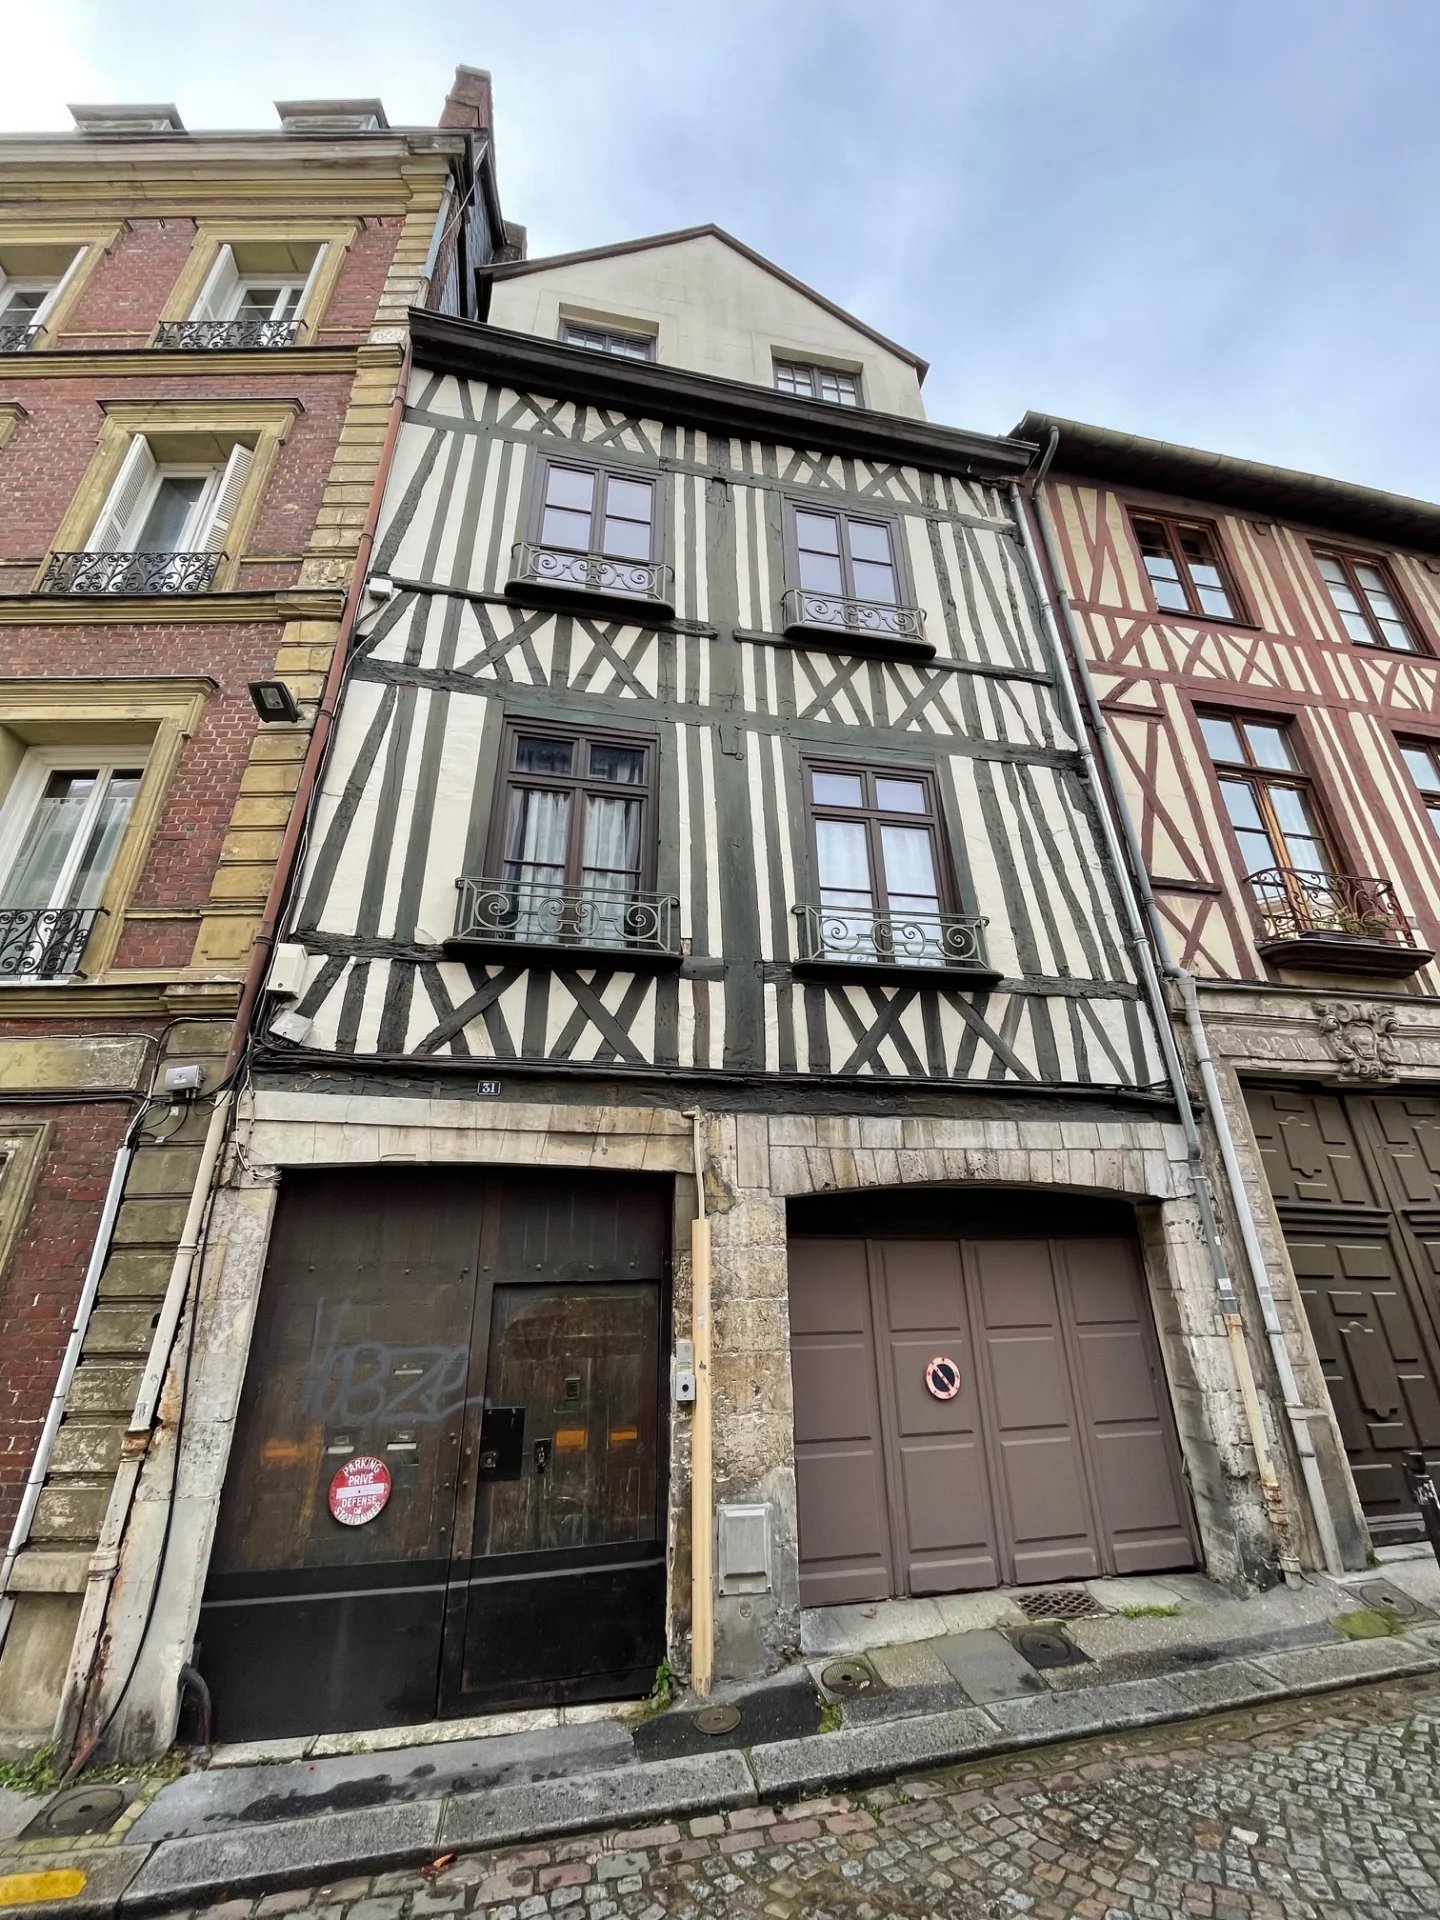 Sale Apartment - Rouen Vieux-Marché